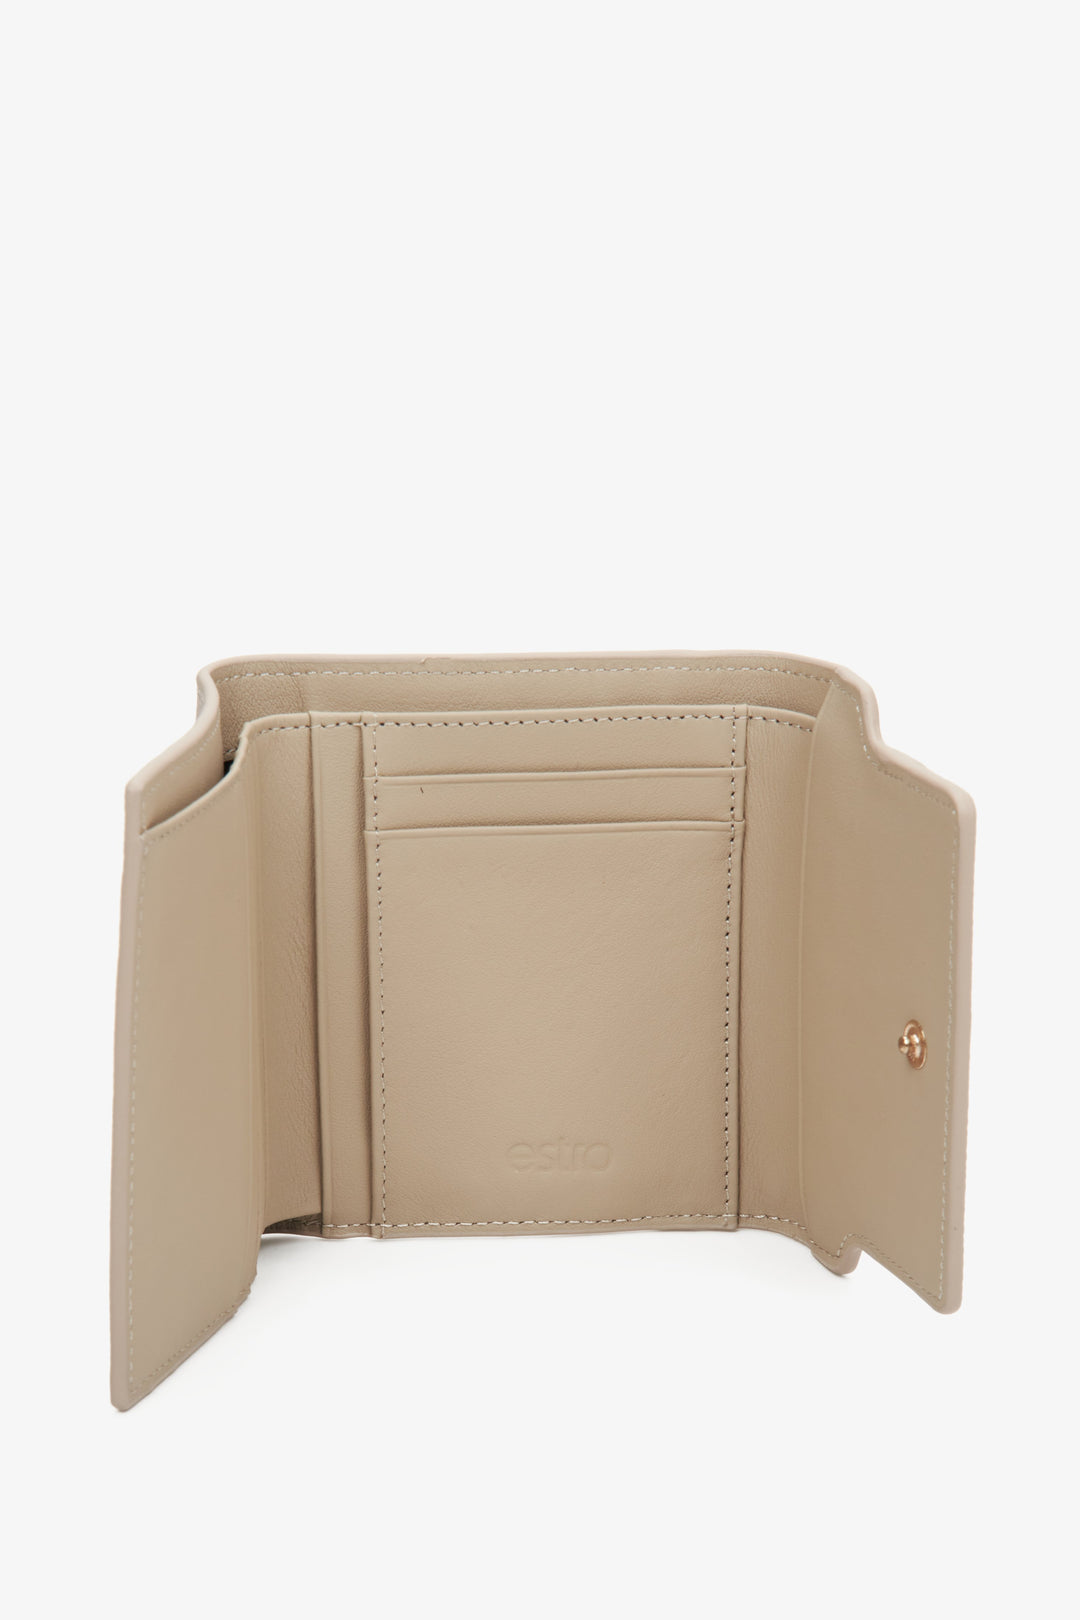 Damski, skórzany portfel w kolorze beżowym Estro ze złotą sprzączką - wnętrze modelu.